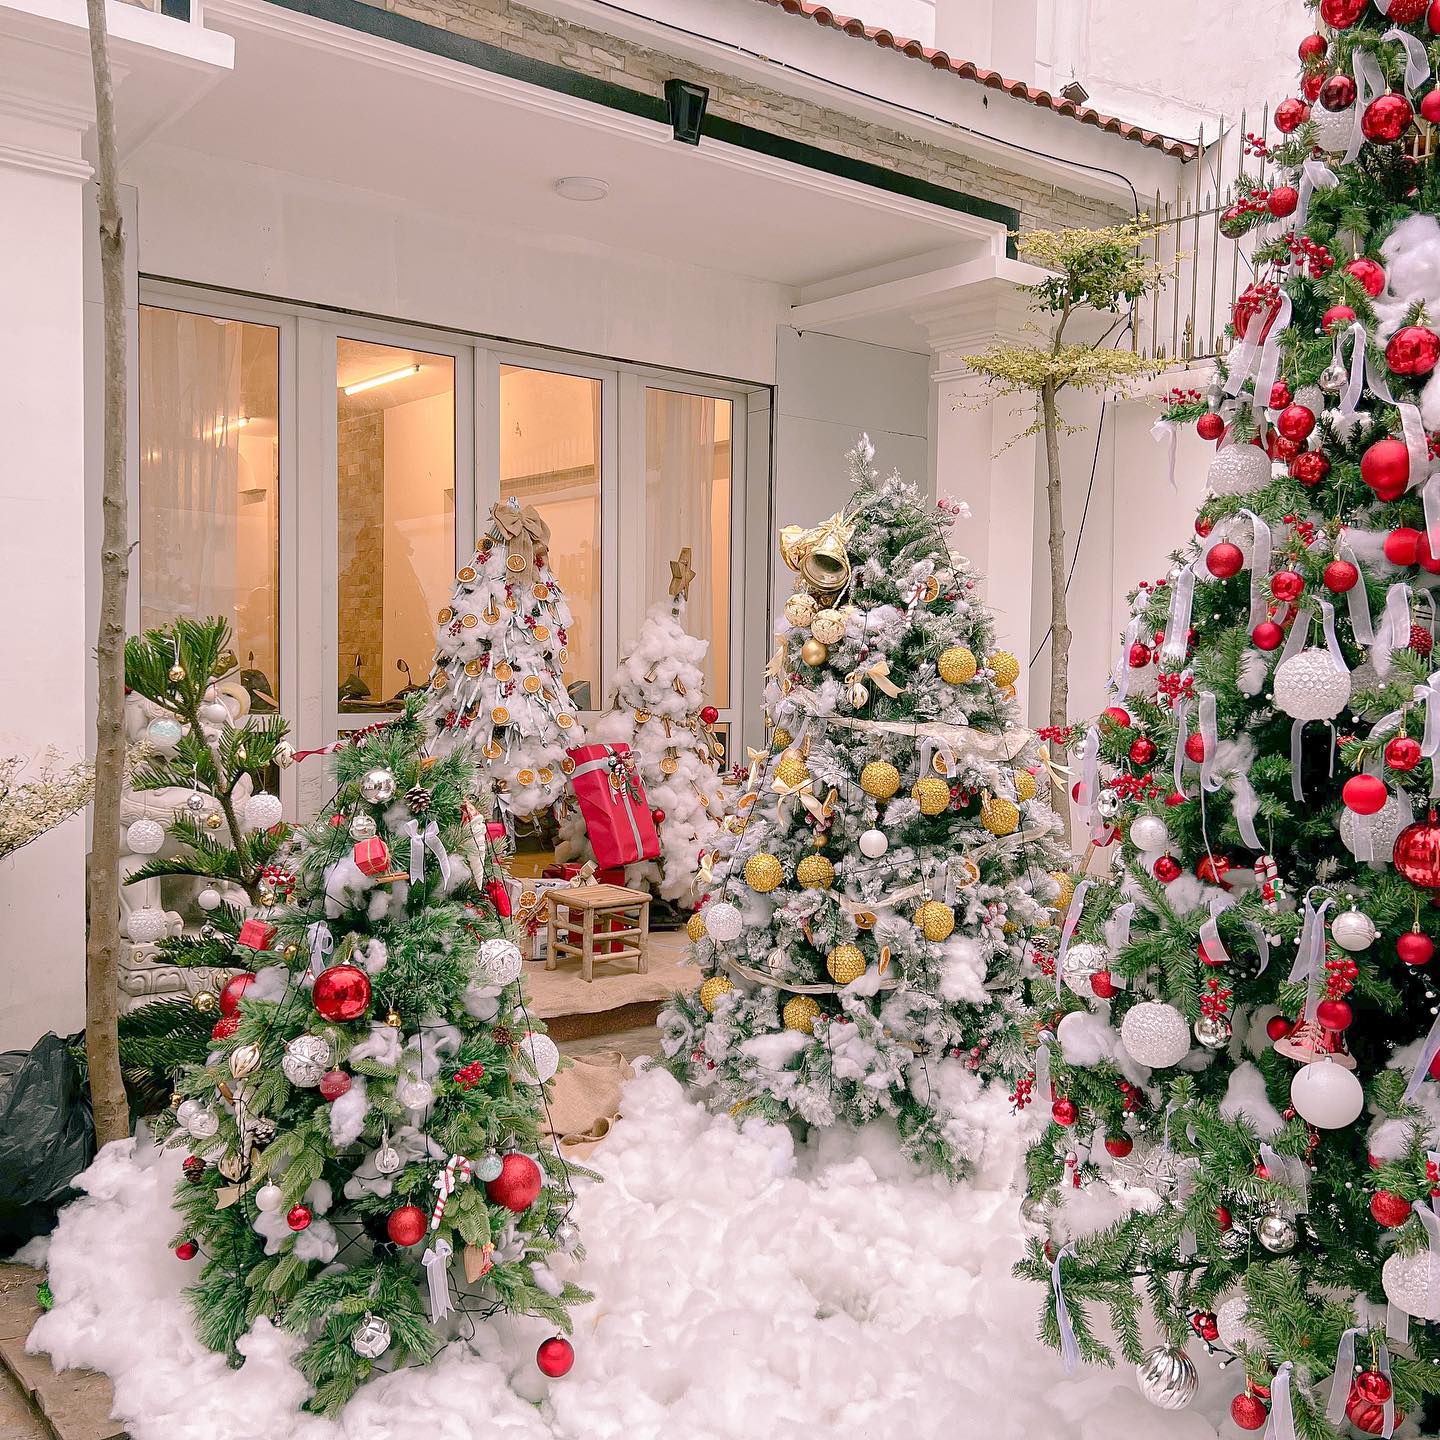 Muốn thưởng thức không khí Giáng sinh ấm áp và đầy màu sắc cùng ly cà phê nóng, bạn hãy đến ngay quán cafe decor Giáng sinh đẹp nhất của chúng tôi. Không gian ấm cúng, đẹp mắt và món cà phê thơm ngon sẽ làm bạn thích thú!